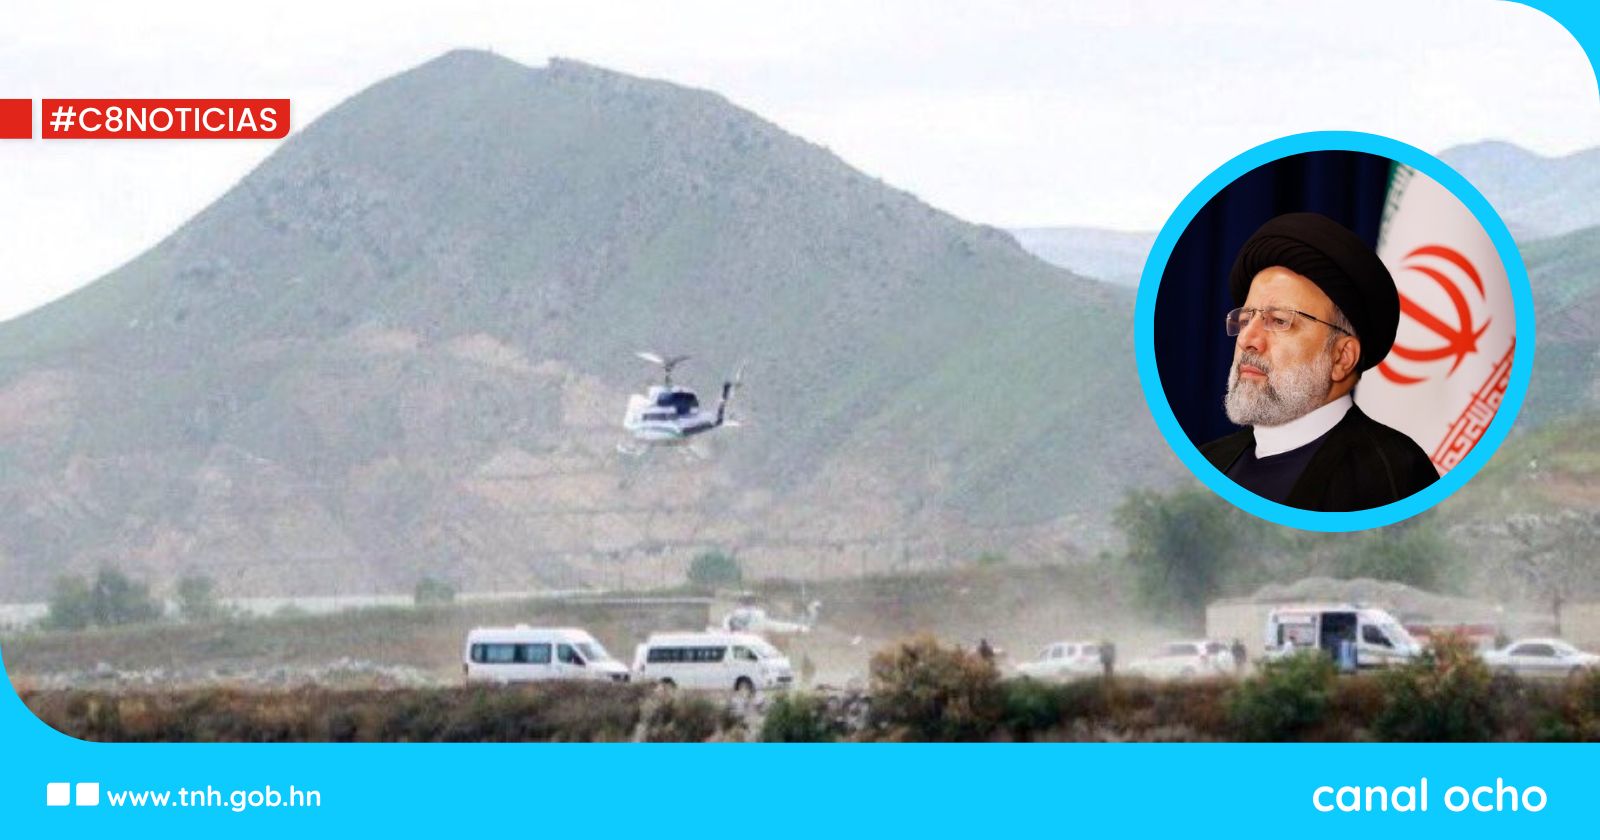 Operación de búsqueda en marcha para localizar helicóptero en Irán